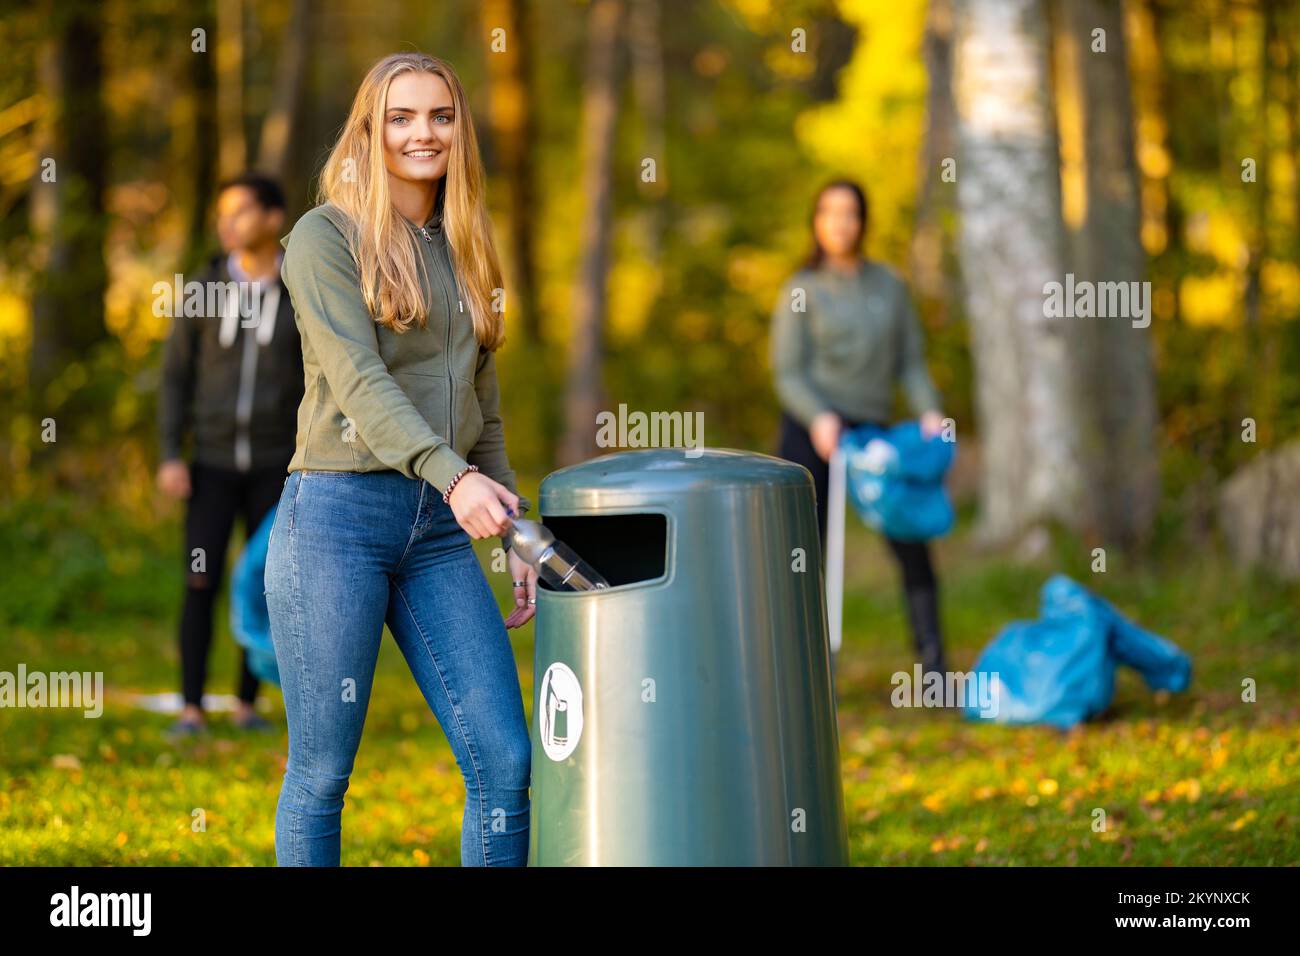 Jeune femme souriante mettant une bouteille dans un poubelle Banque D'Images